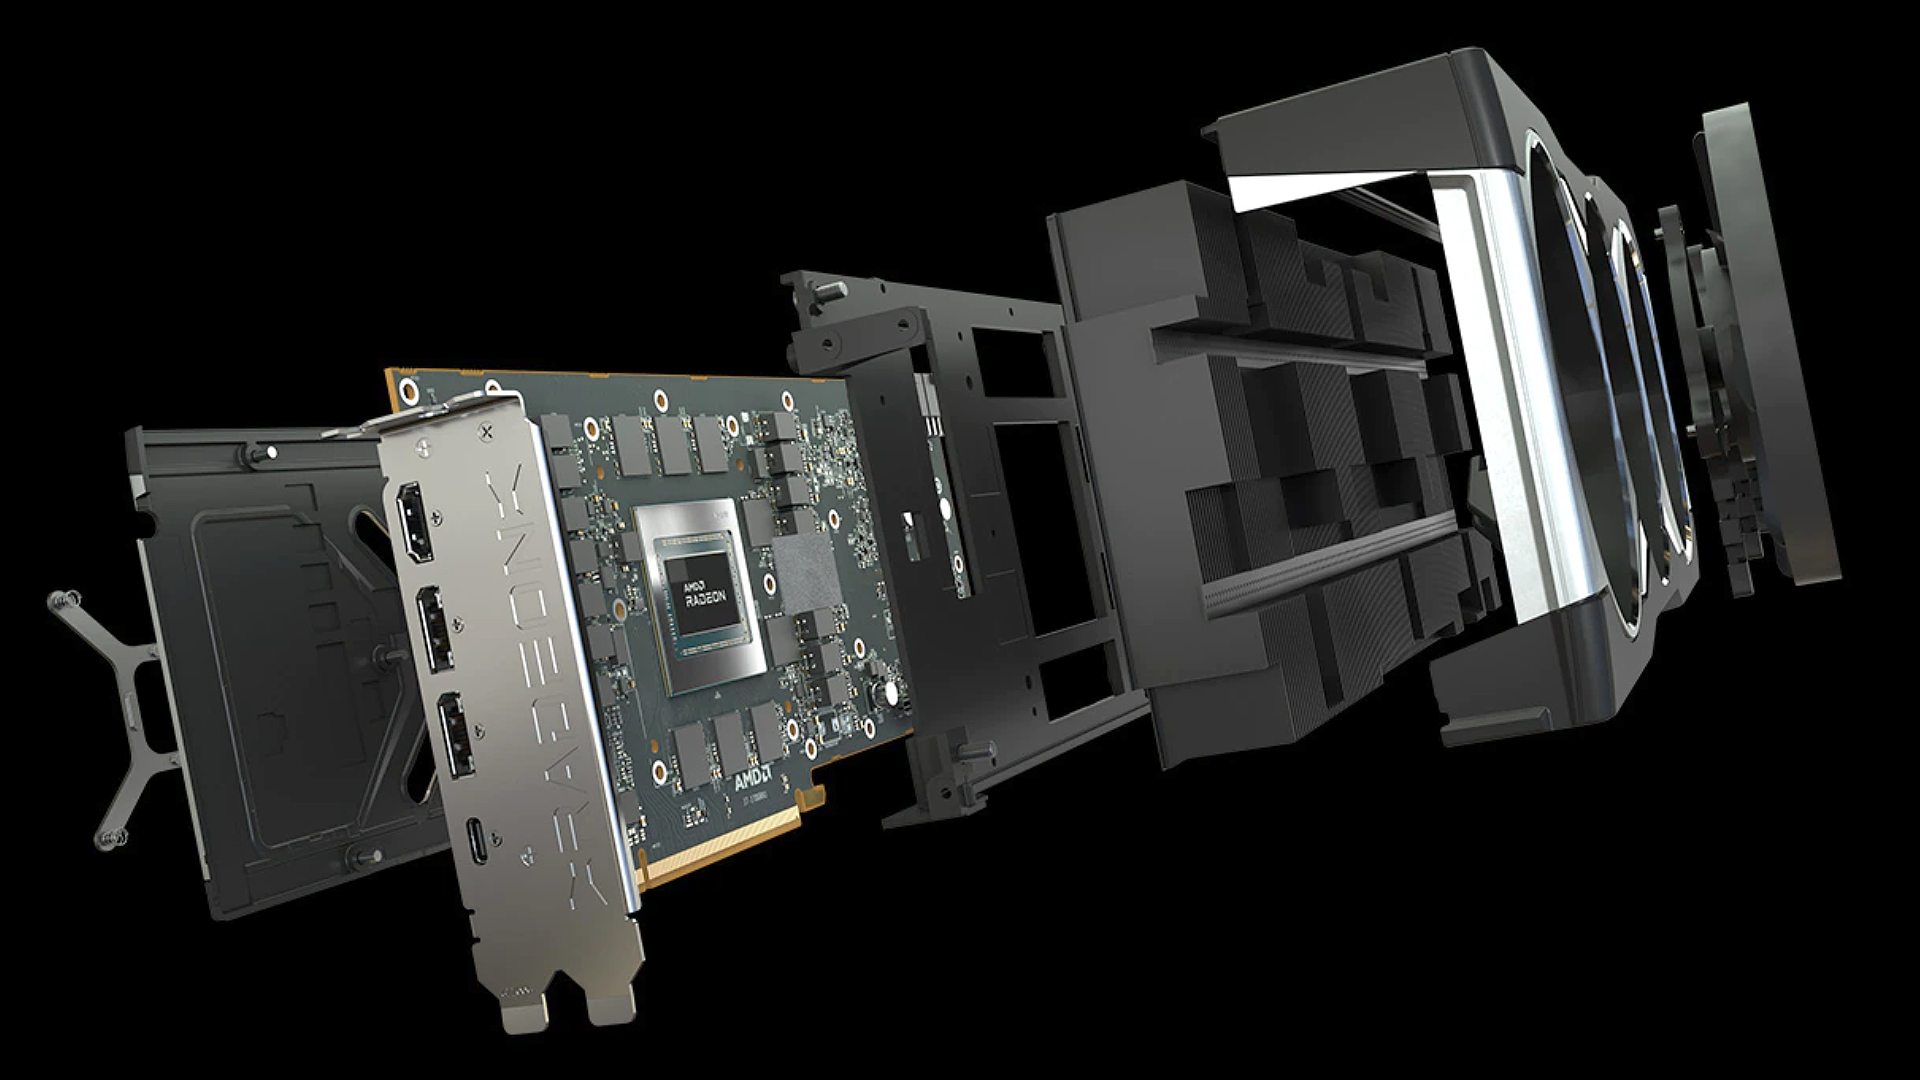 La carte graphique AMD Radeon a explosé avec un aperçu intérieur du GPU et de la carte